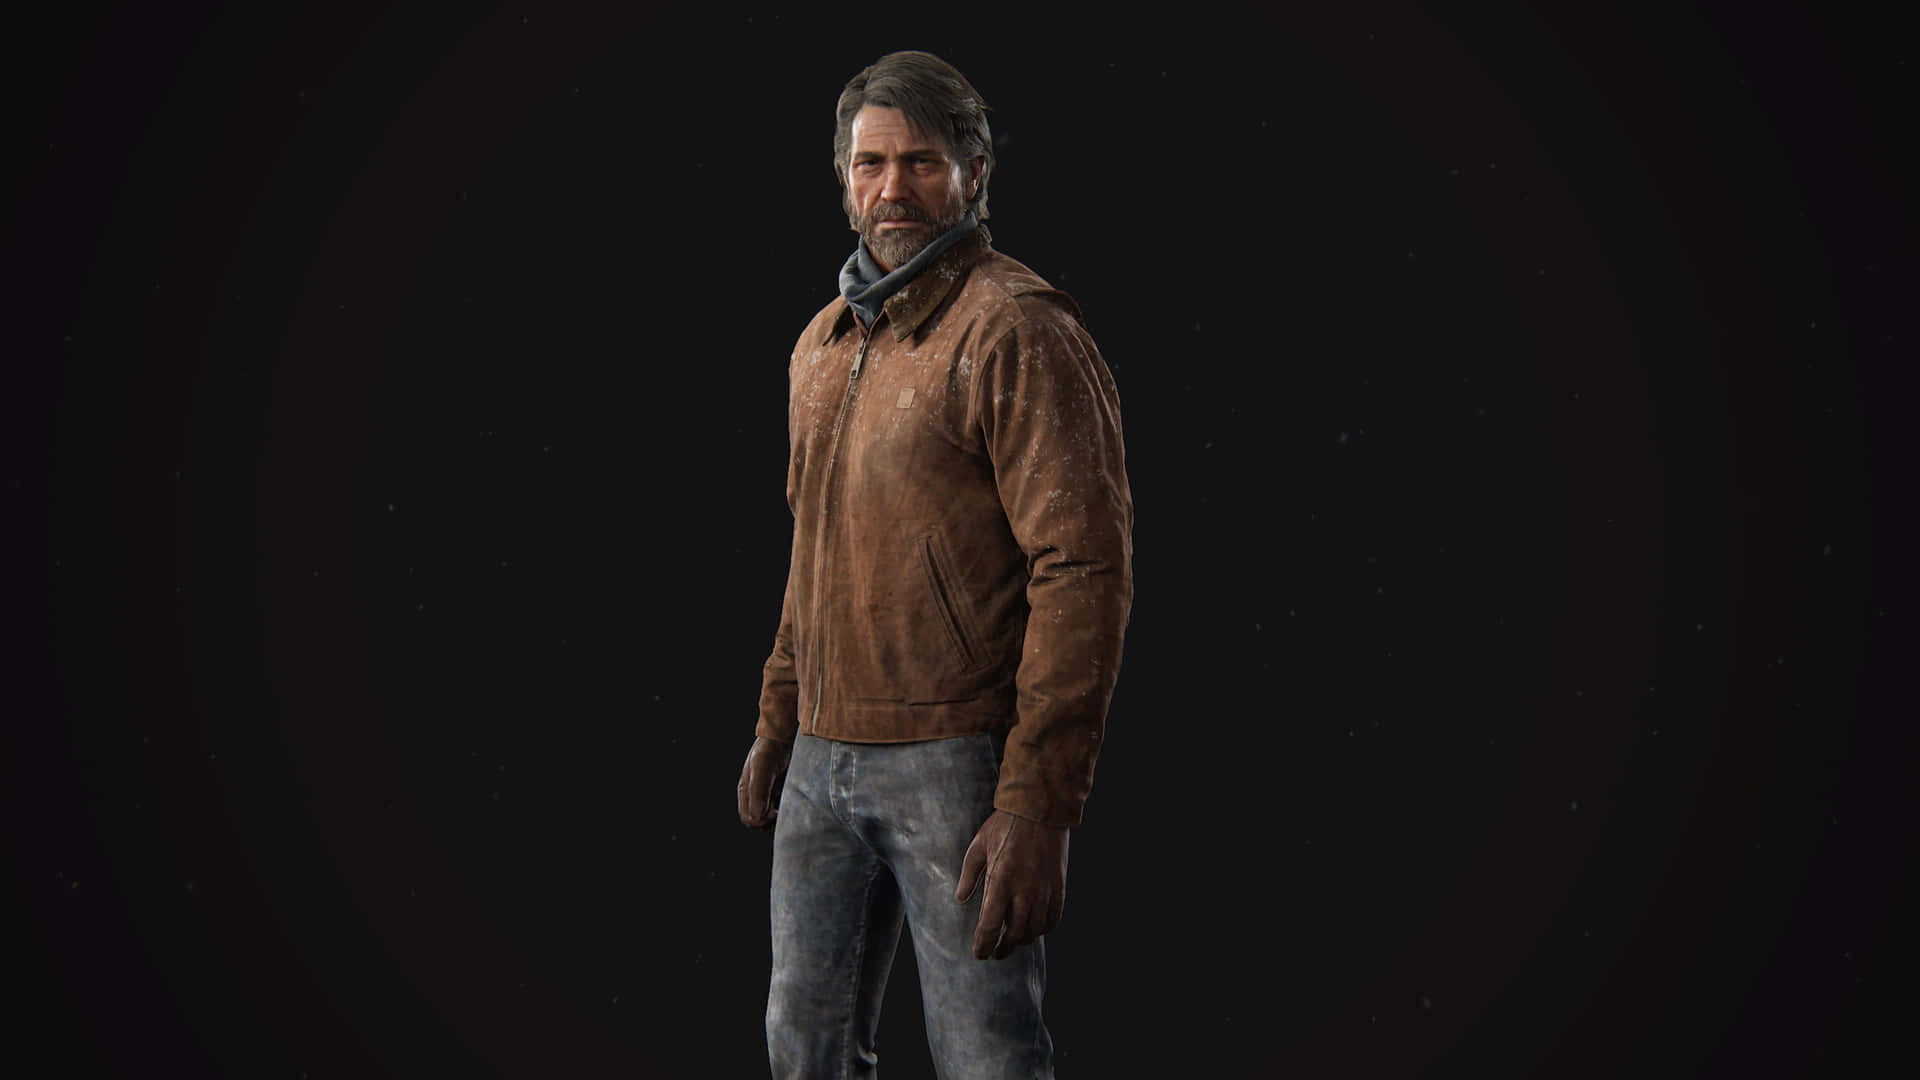 Elliee Joel Esplorano Il Mondo Post-apocalittico In The Last Of Us.